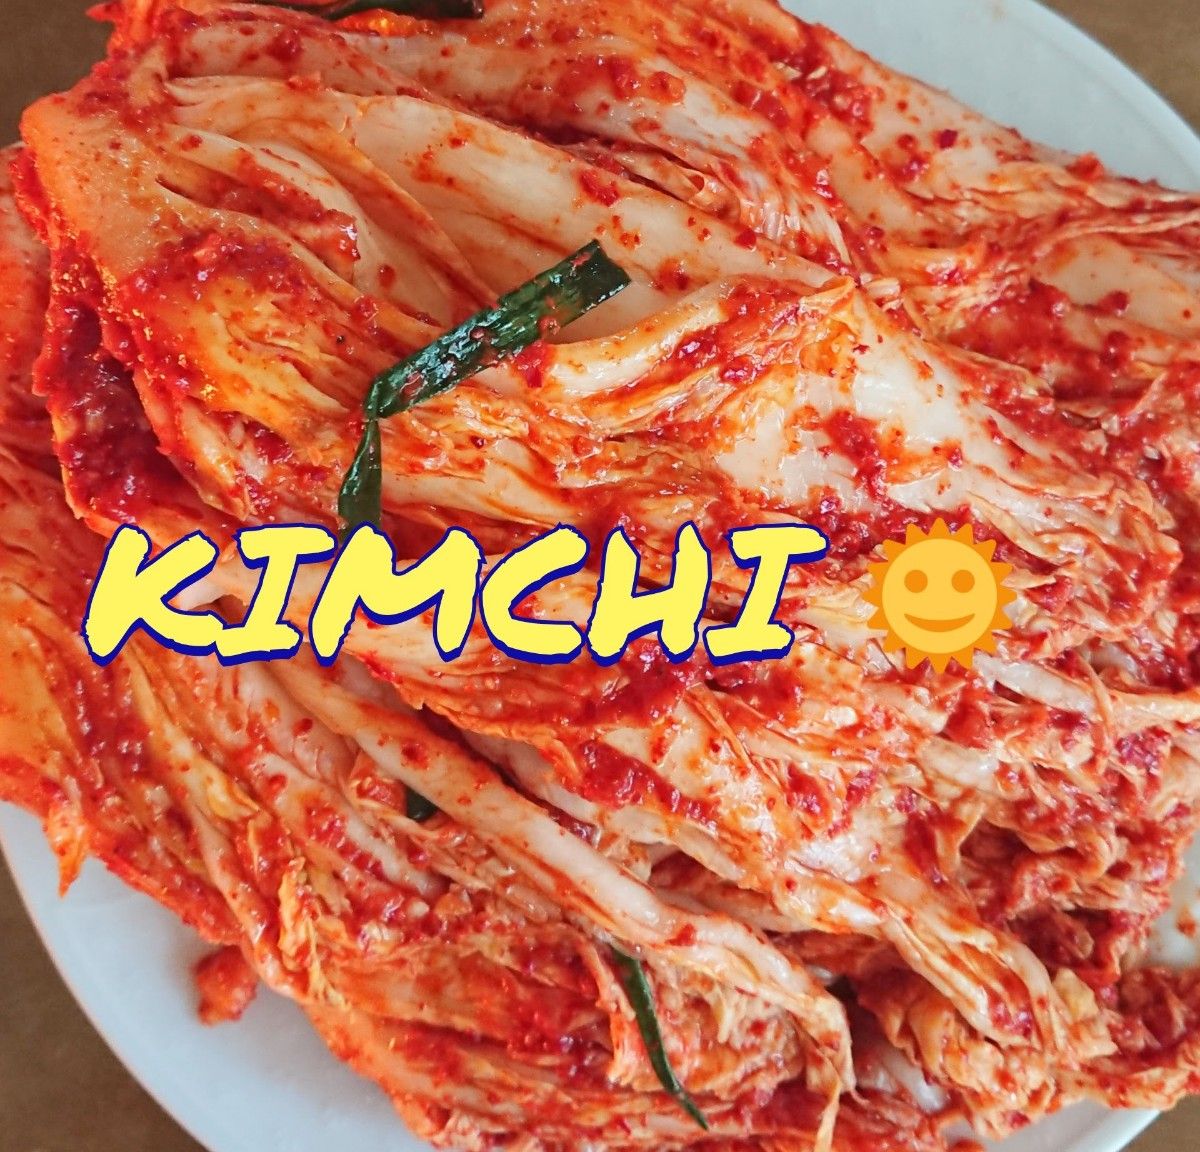 【本場の味&自家製】激辛白菜キムチ1kg + ブチュ(ニラ)キムチ300g